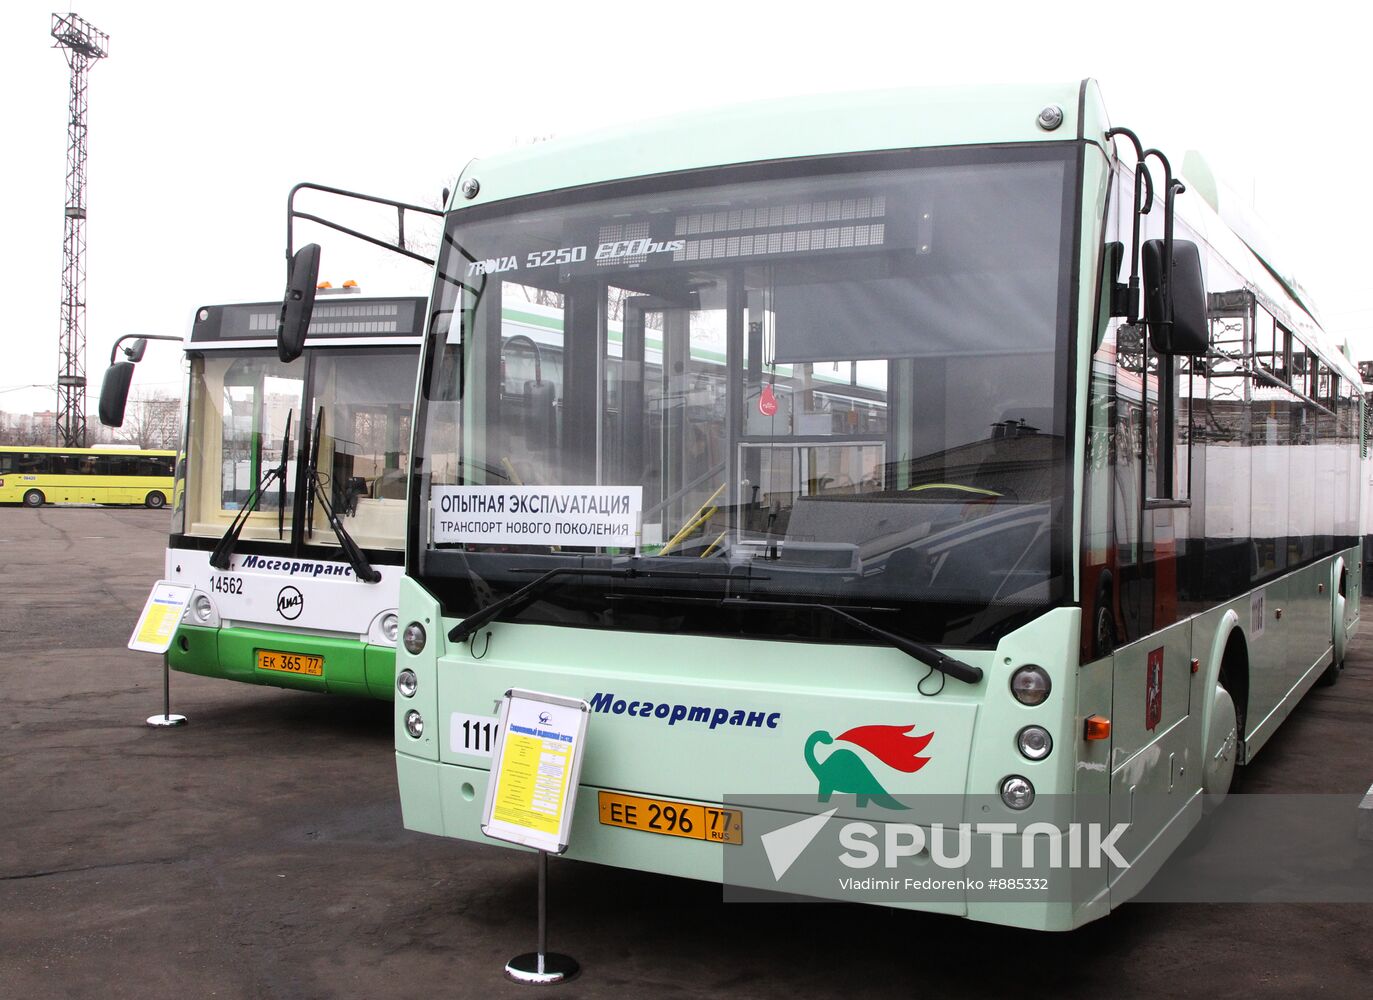 Ekobus - hybrid bus "TrolZa 5230"